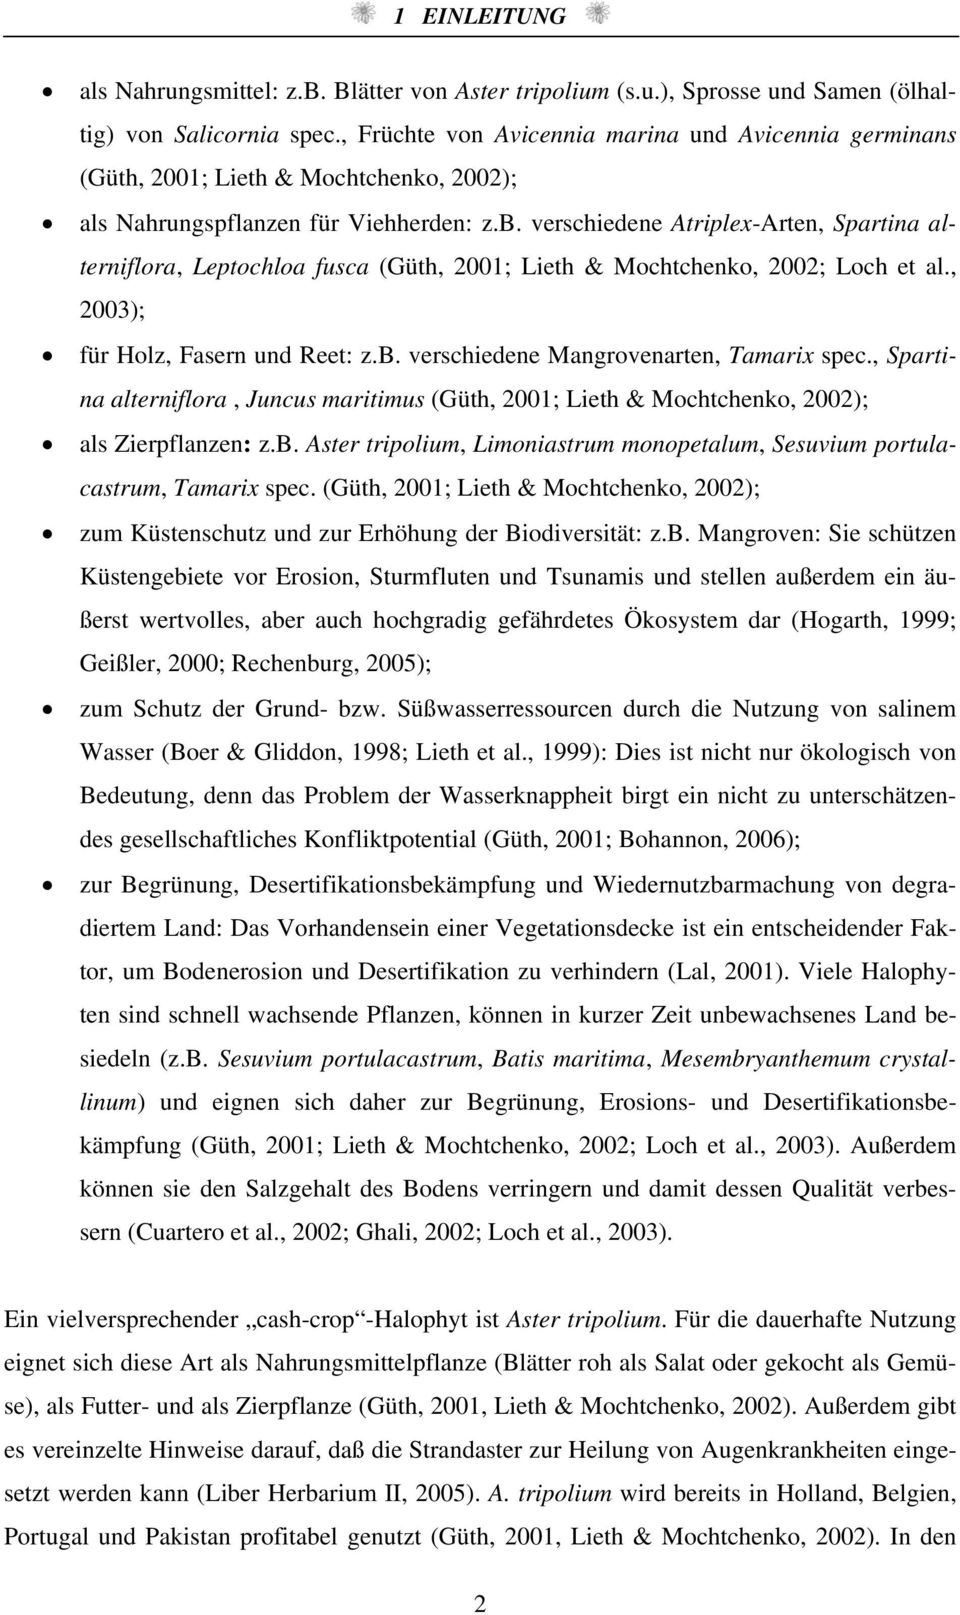 vershiedene Atriplex-Arten, Sprtin lterniflor, Leptohlo fus (Güth, 21; Lieth & Mohthenko, 22; Loh et l., 23); für Holz, Fsern und Reet: z.b. vershiedene Mngrovenrten, Tmrix spe.